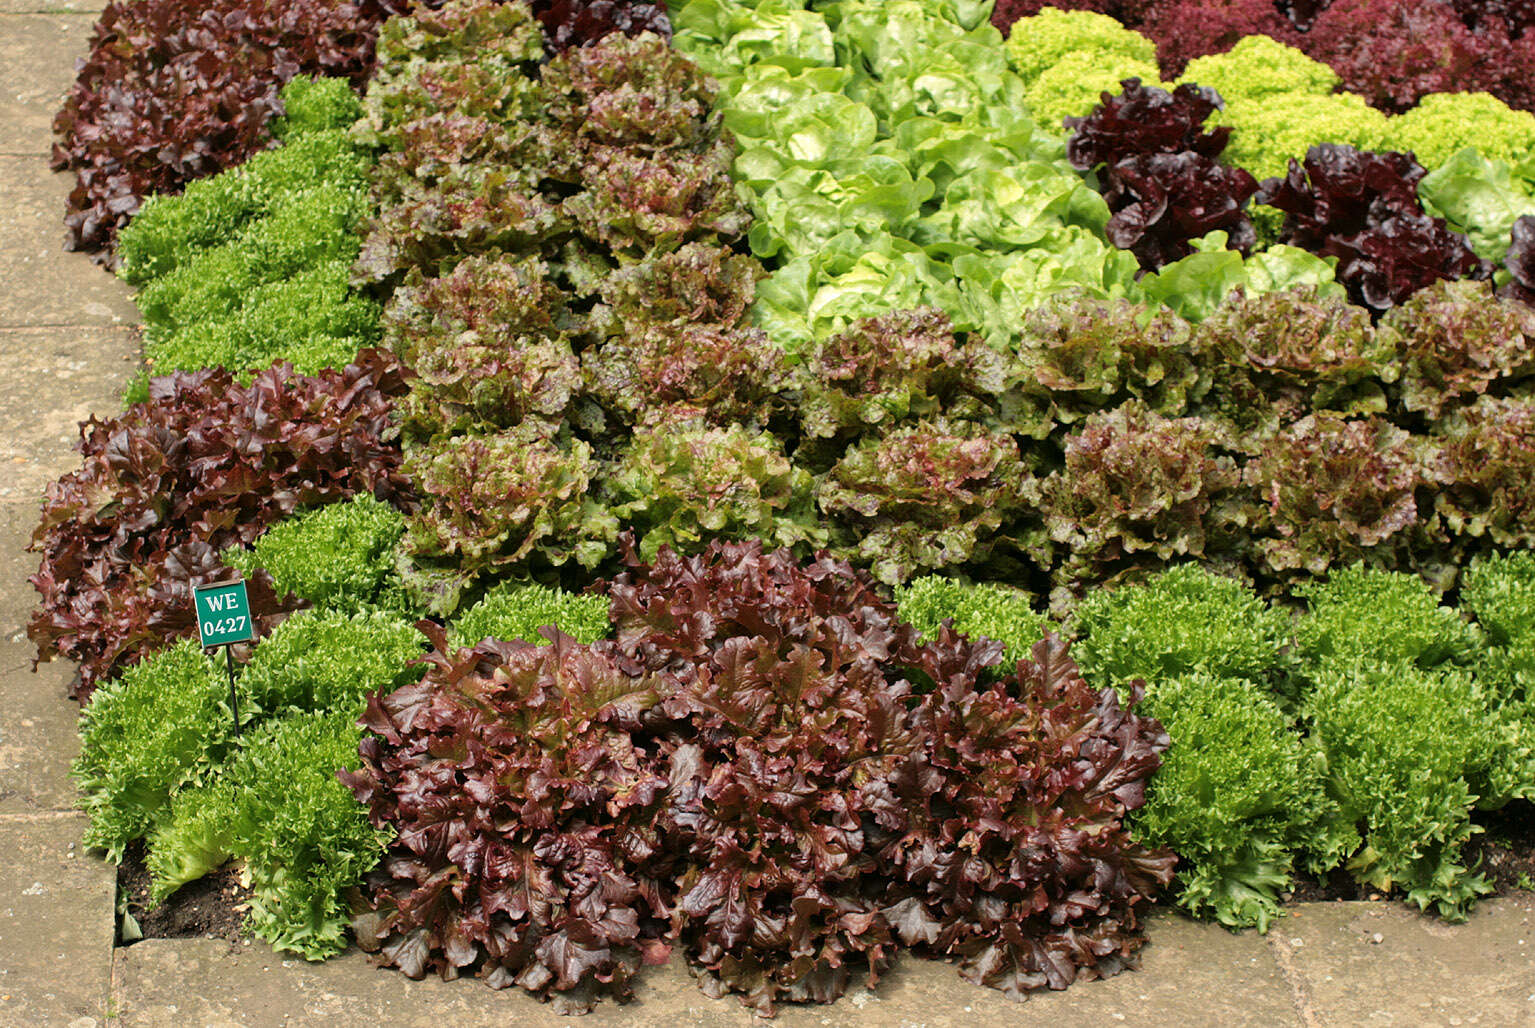 Image of garden lettuce